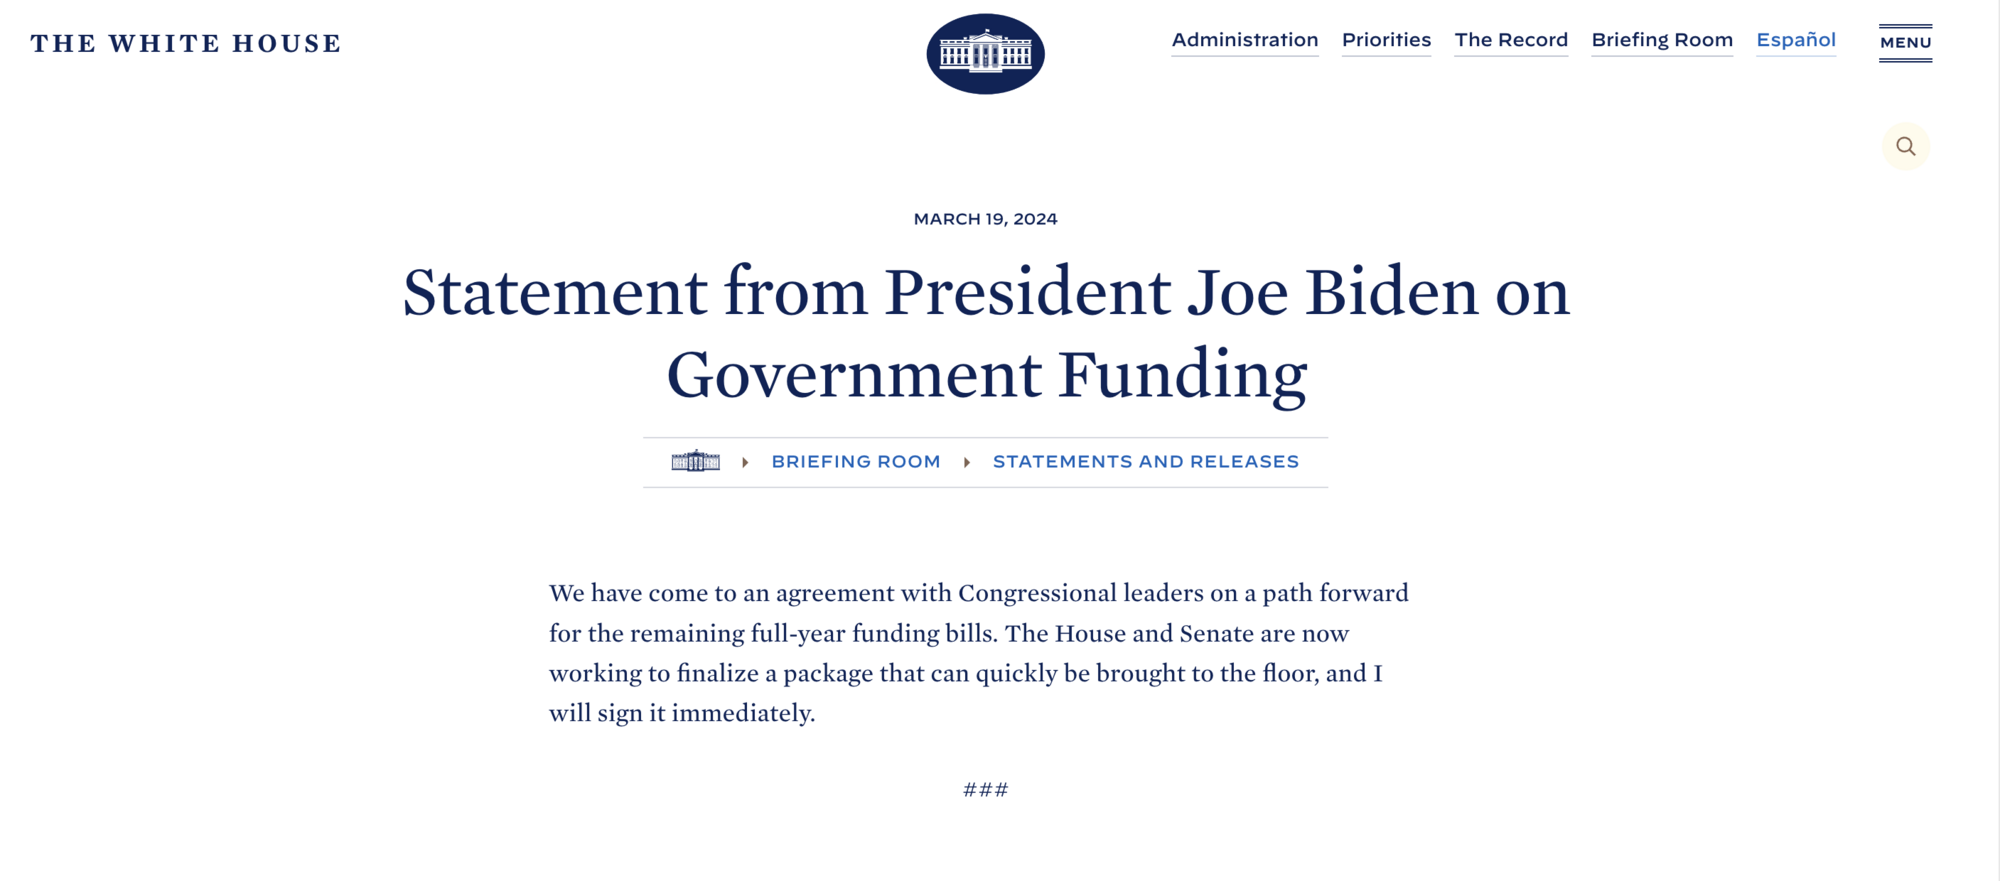 Biały Dom i Kongres zgadzają się w sprawie budżetu USA: Biden obiecuje szybką decyzję